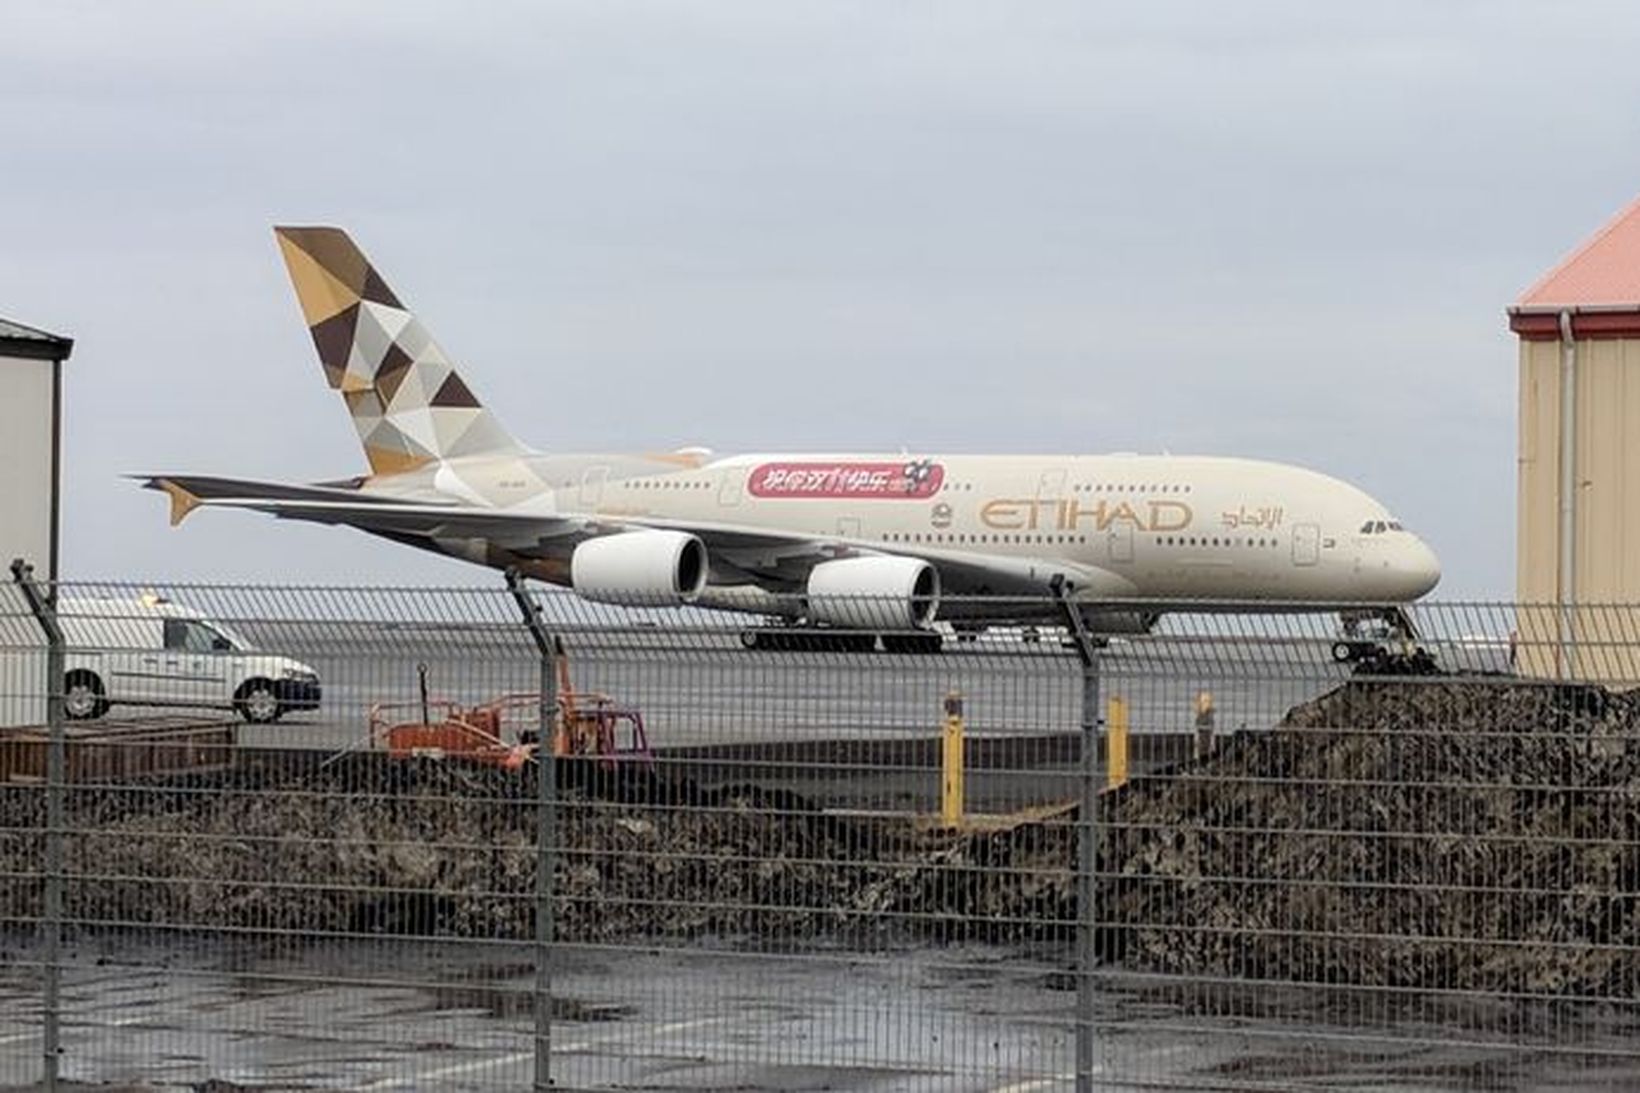 Airbus A380 farþegaþota flugfélagsins Etihad Airways á flugvellinum í morgun.